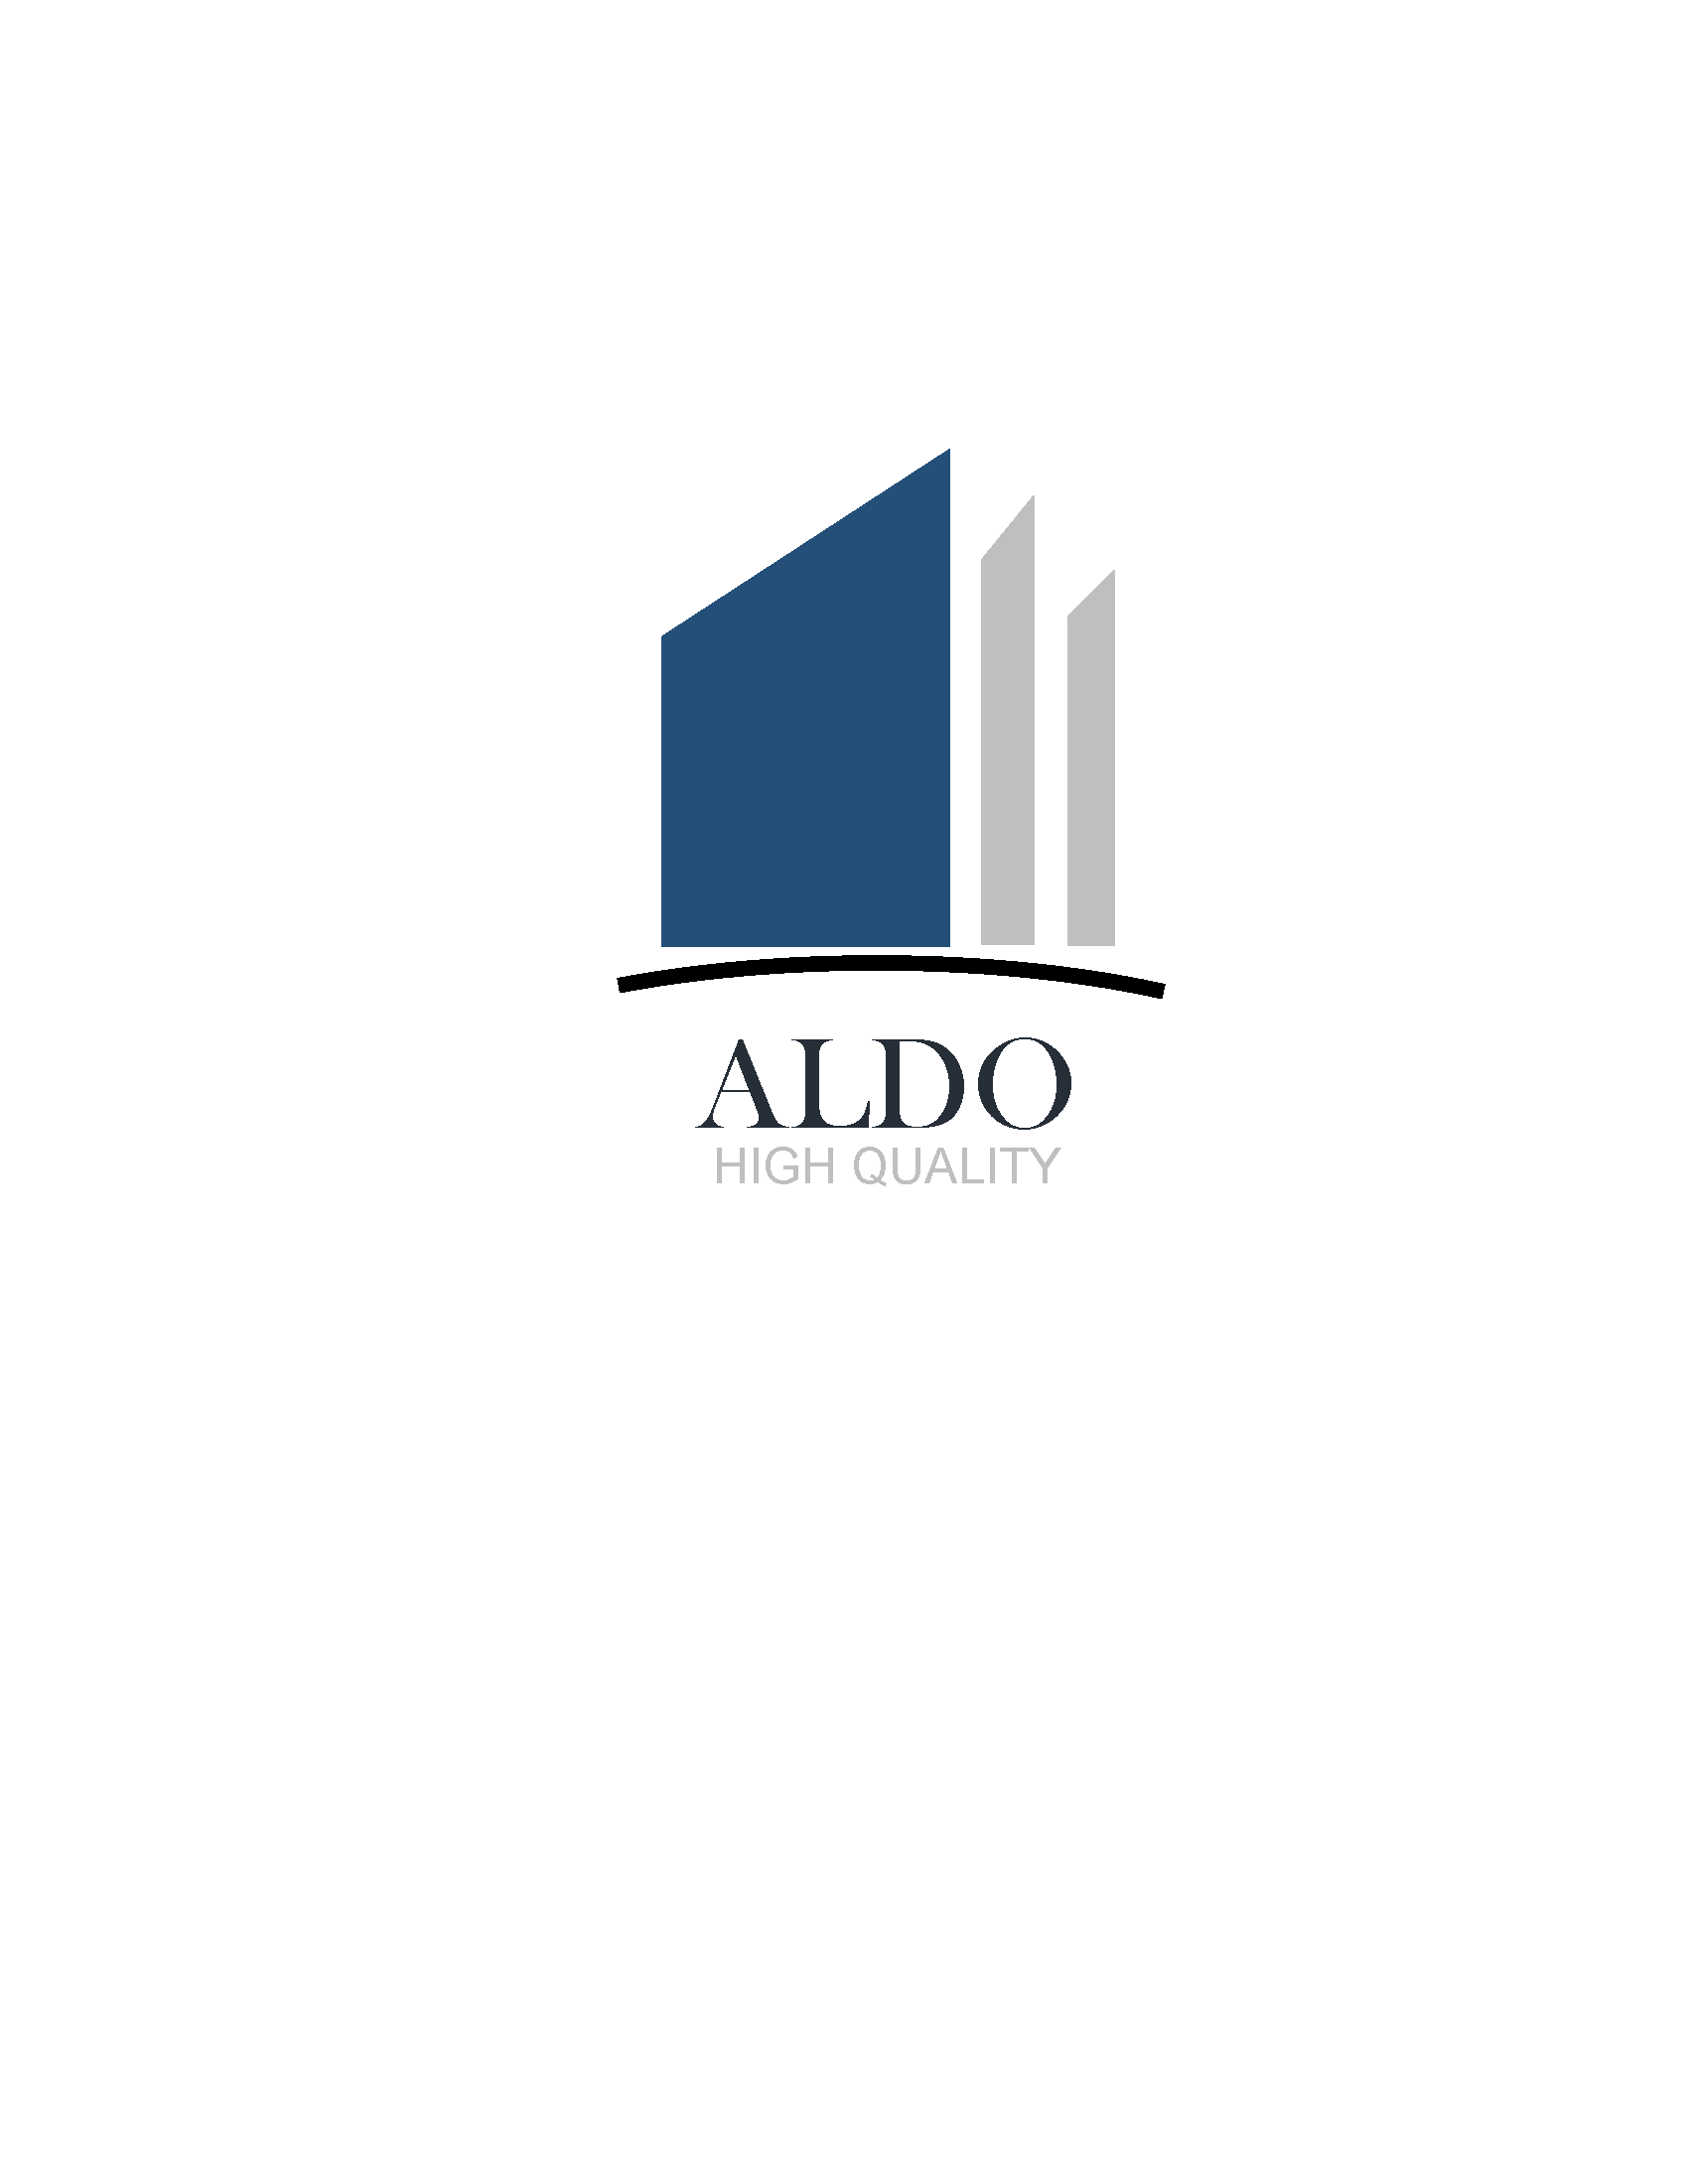 Aldo's Door and Hardware Logo